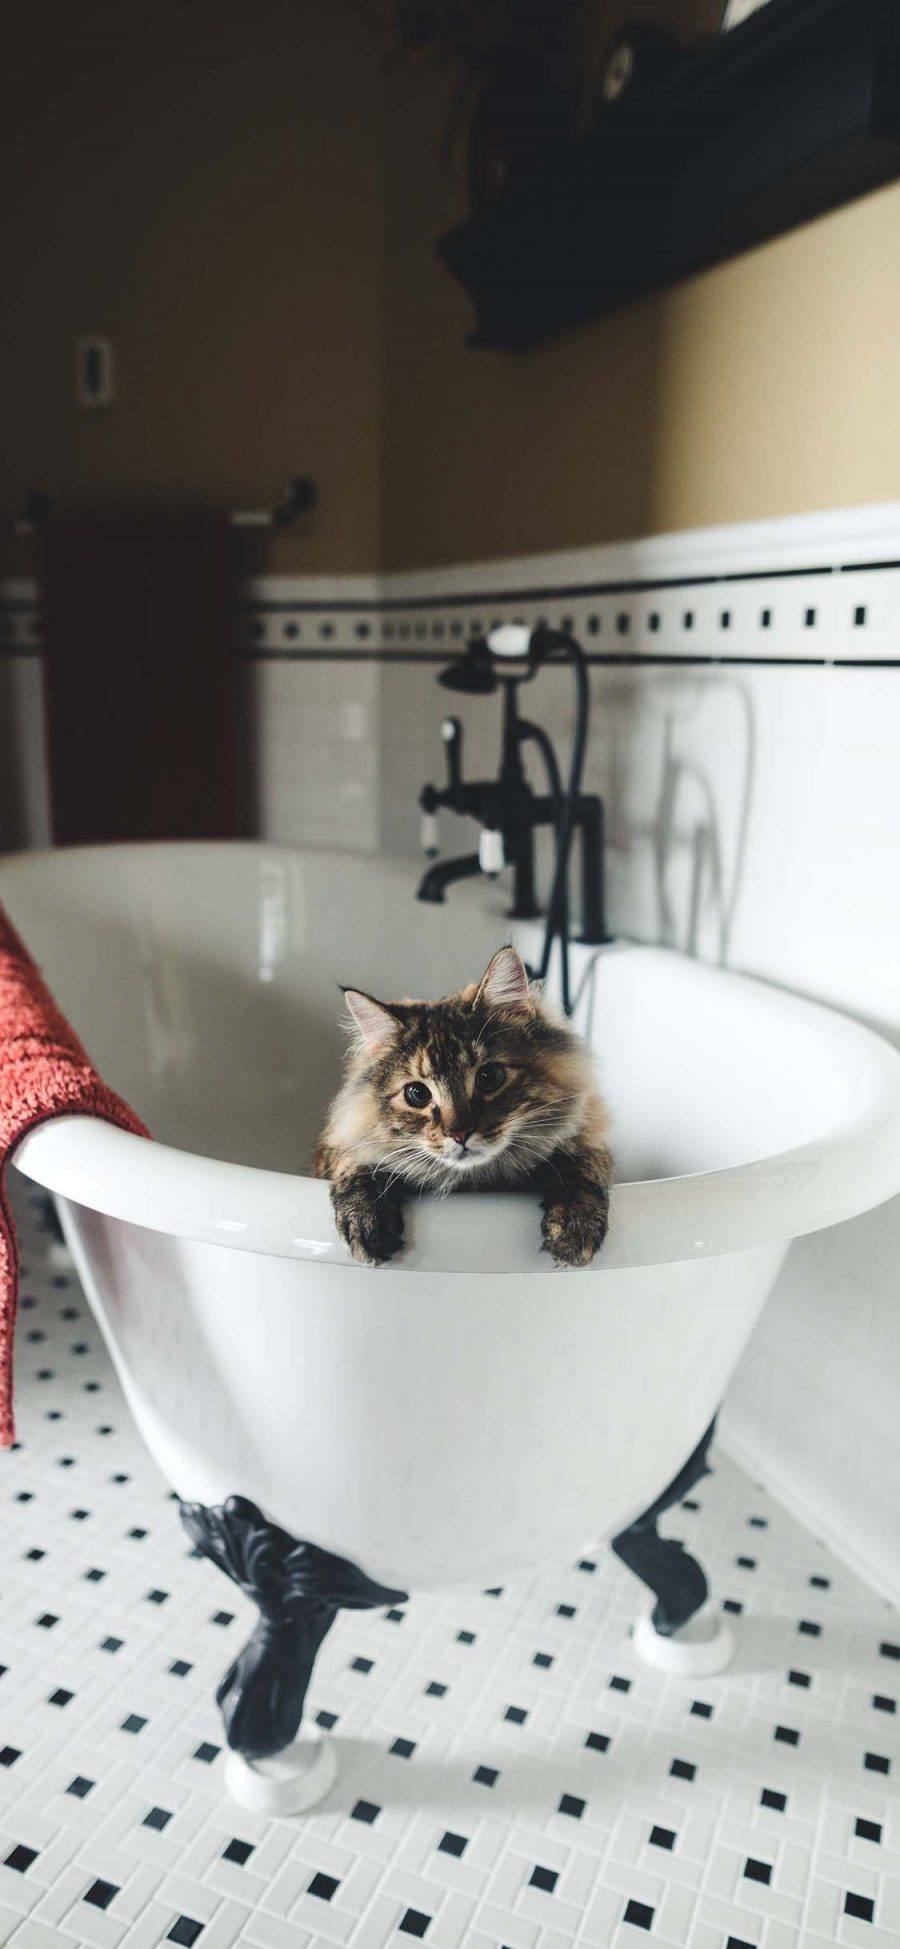 [2436×1125]浴室 浴缸 宠物 猫咪 苹果手机壁纸图片